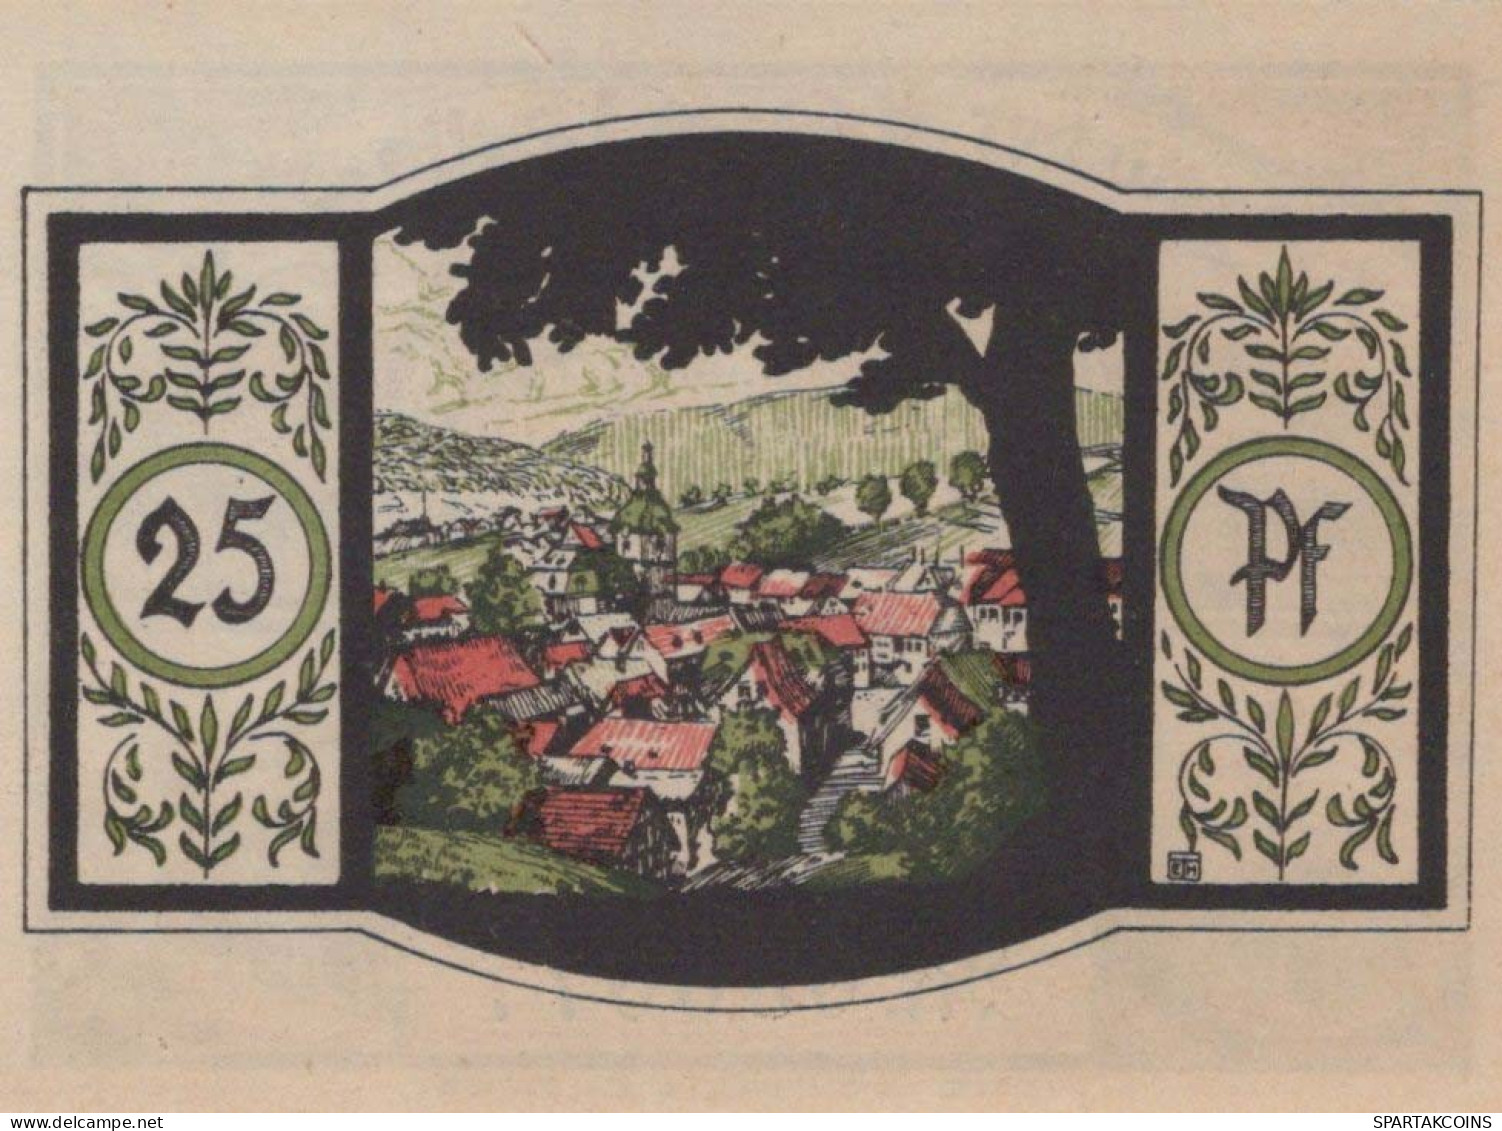 25 PFENNIG 1921 Stadt ZELLA-MEHLIS Thuringia DEUTSCHLAND Notgeld Banknote #PF517 - [11] Emisiones Locales